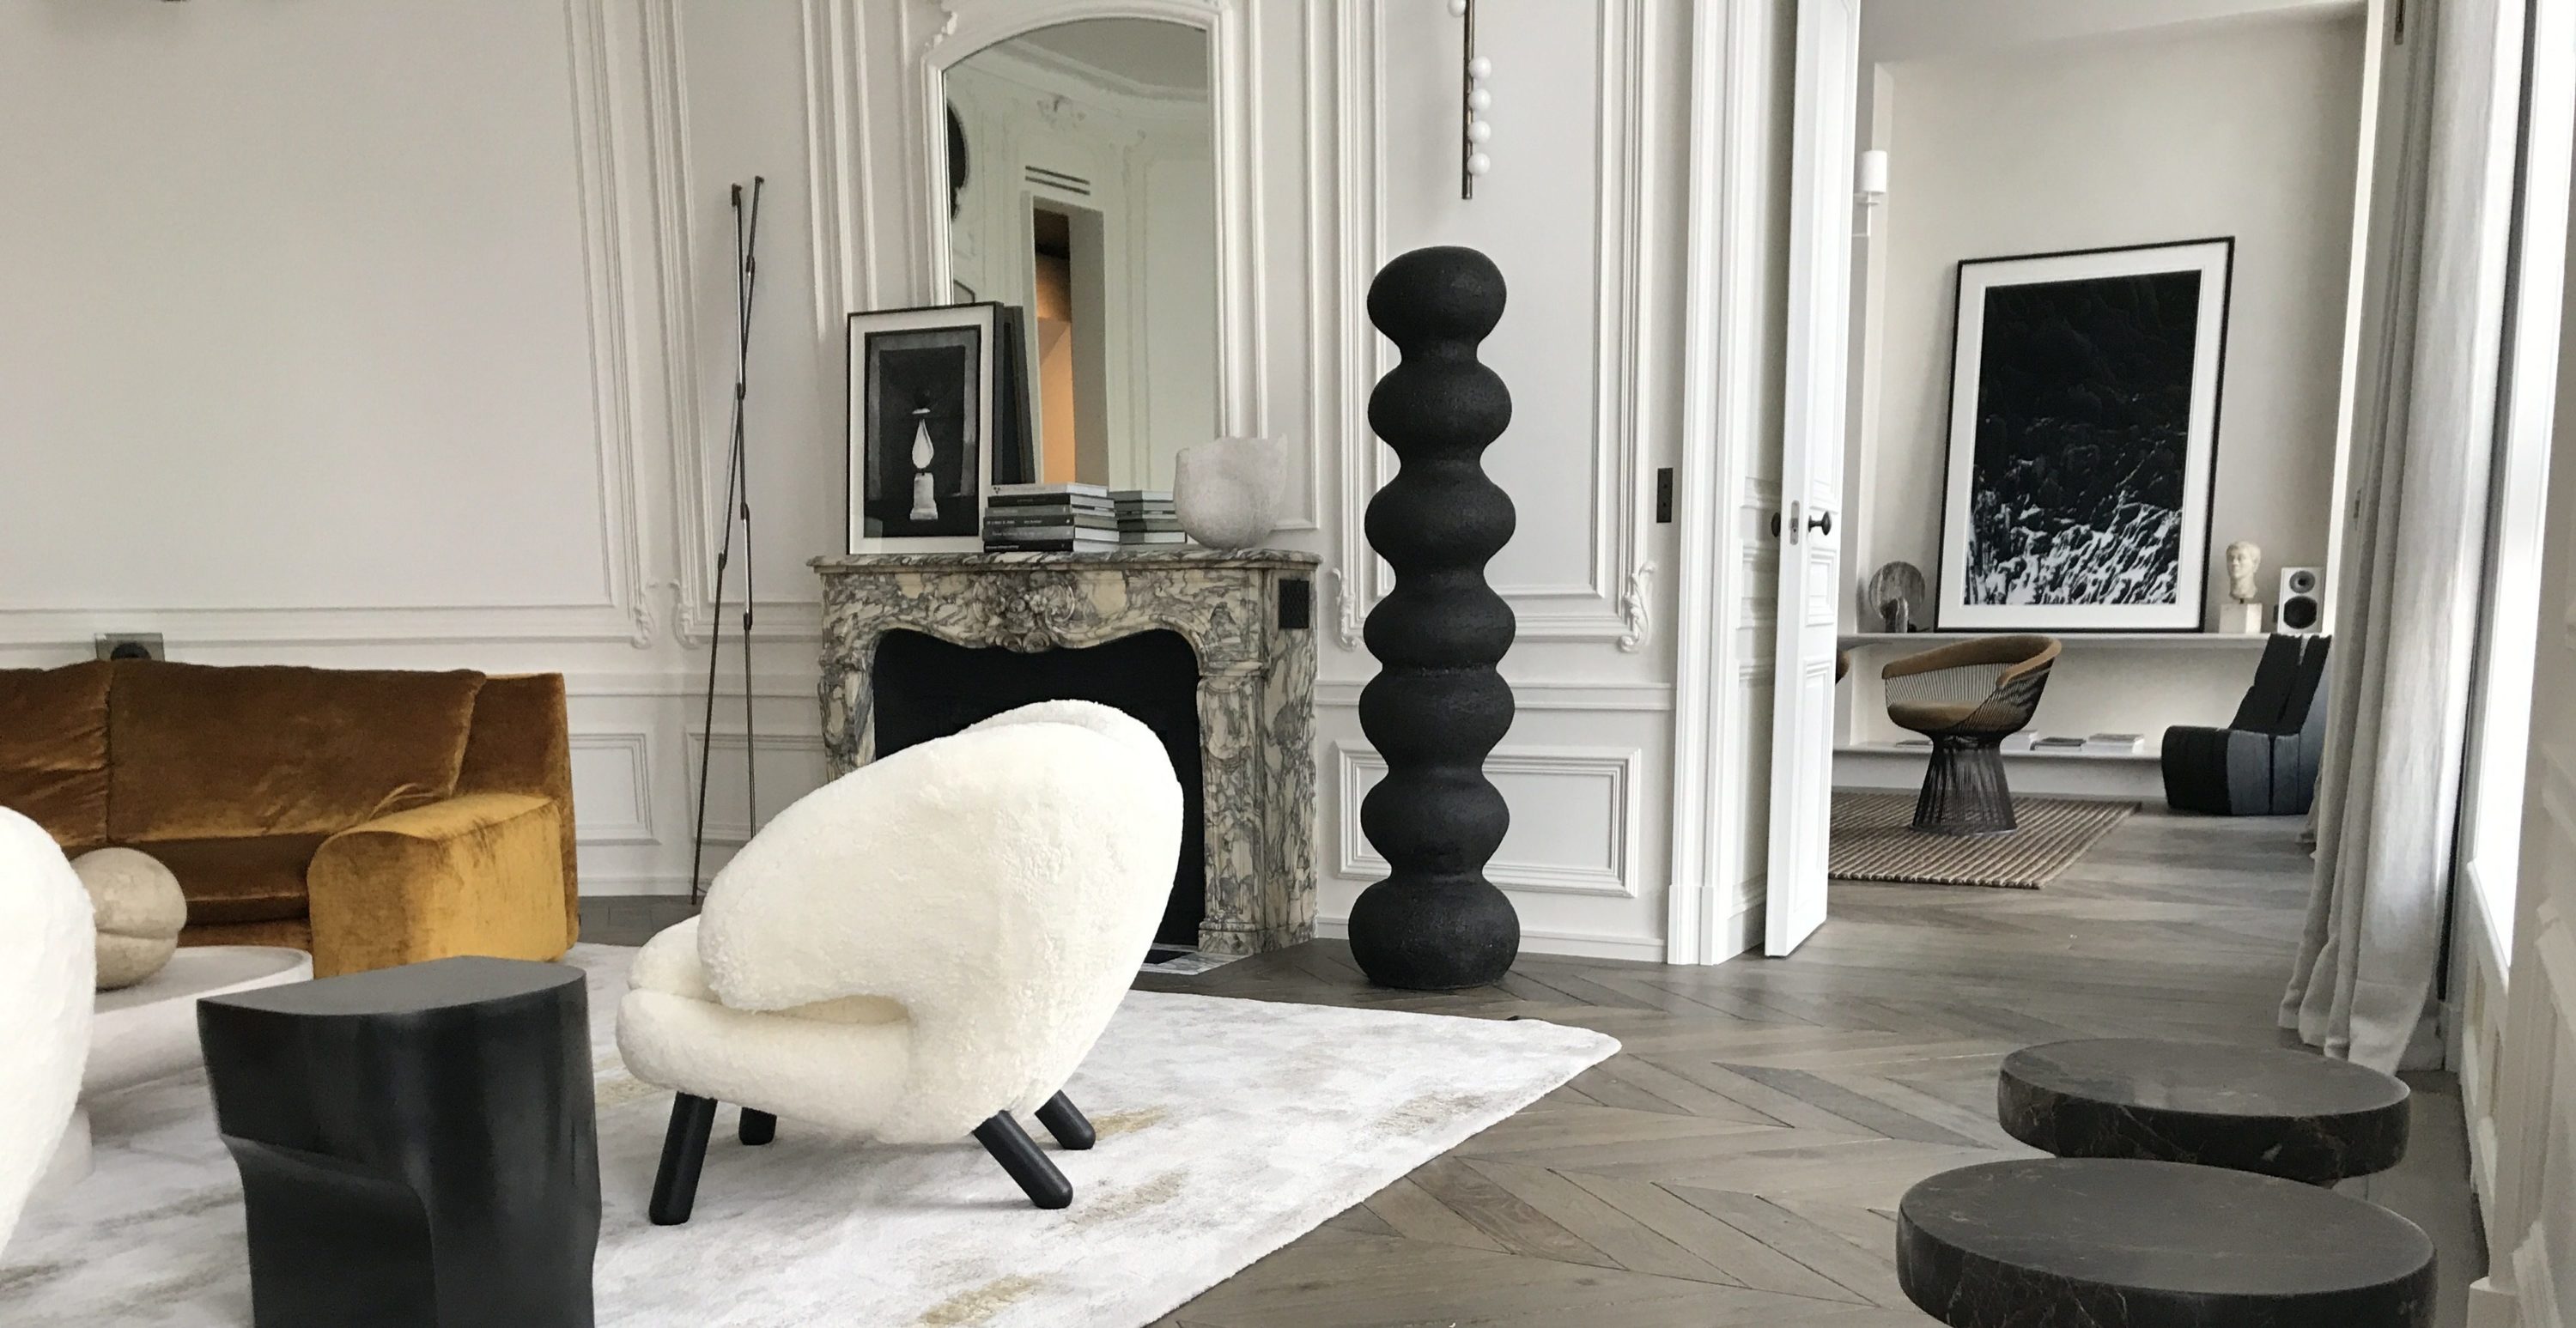 Sculptures in a Paris apartment